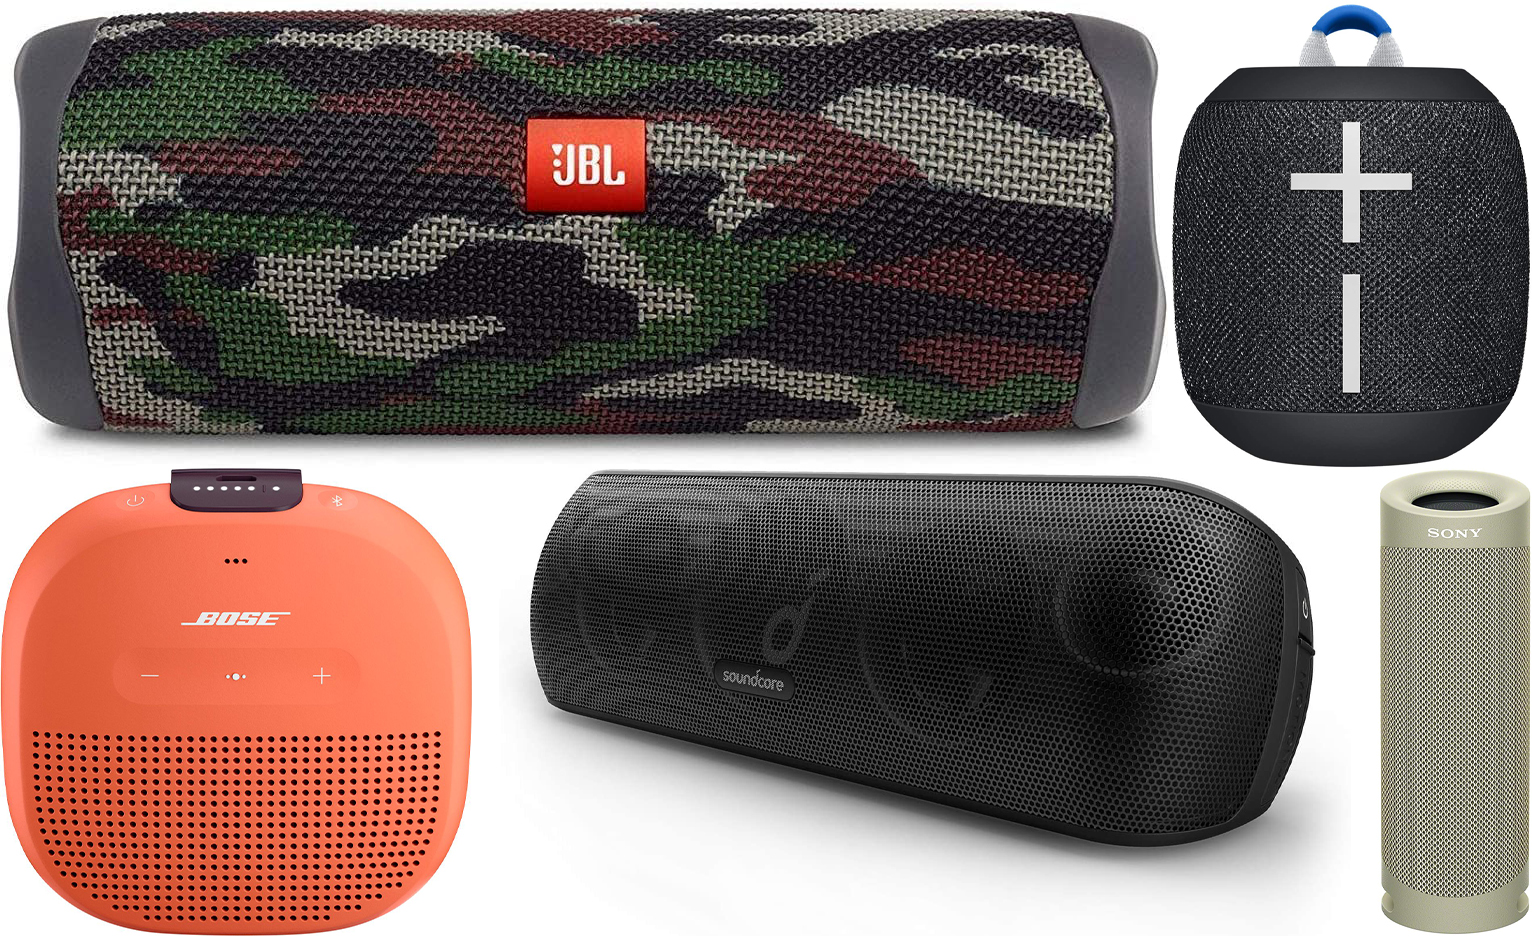 Top 5 waterproof portable Bluetooth speakers under $100